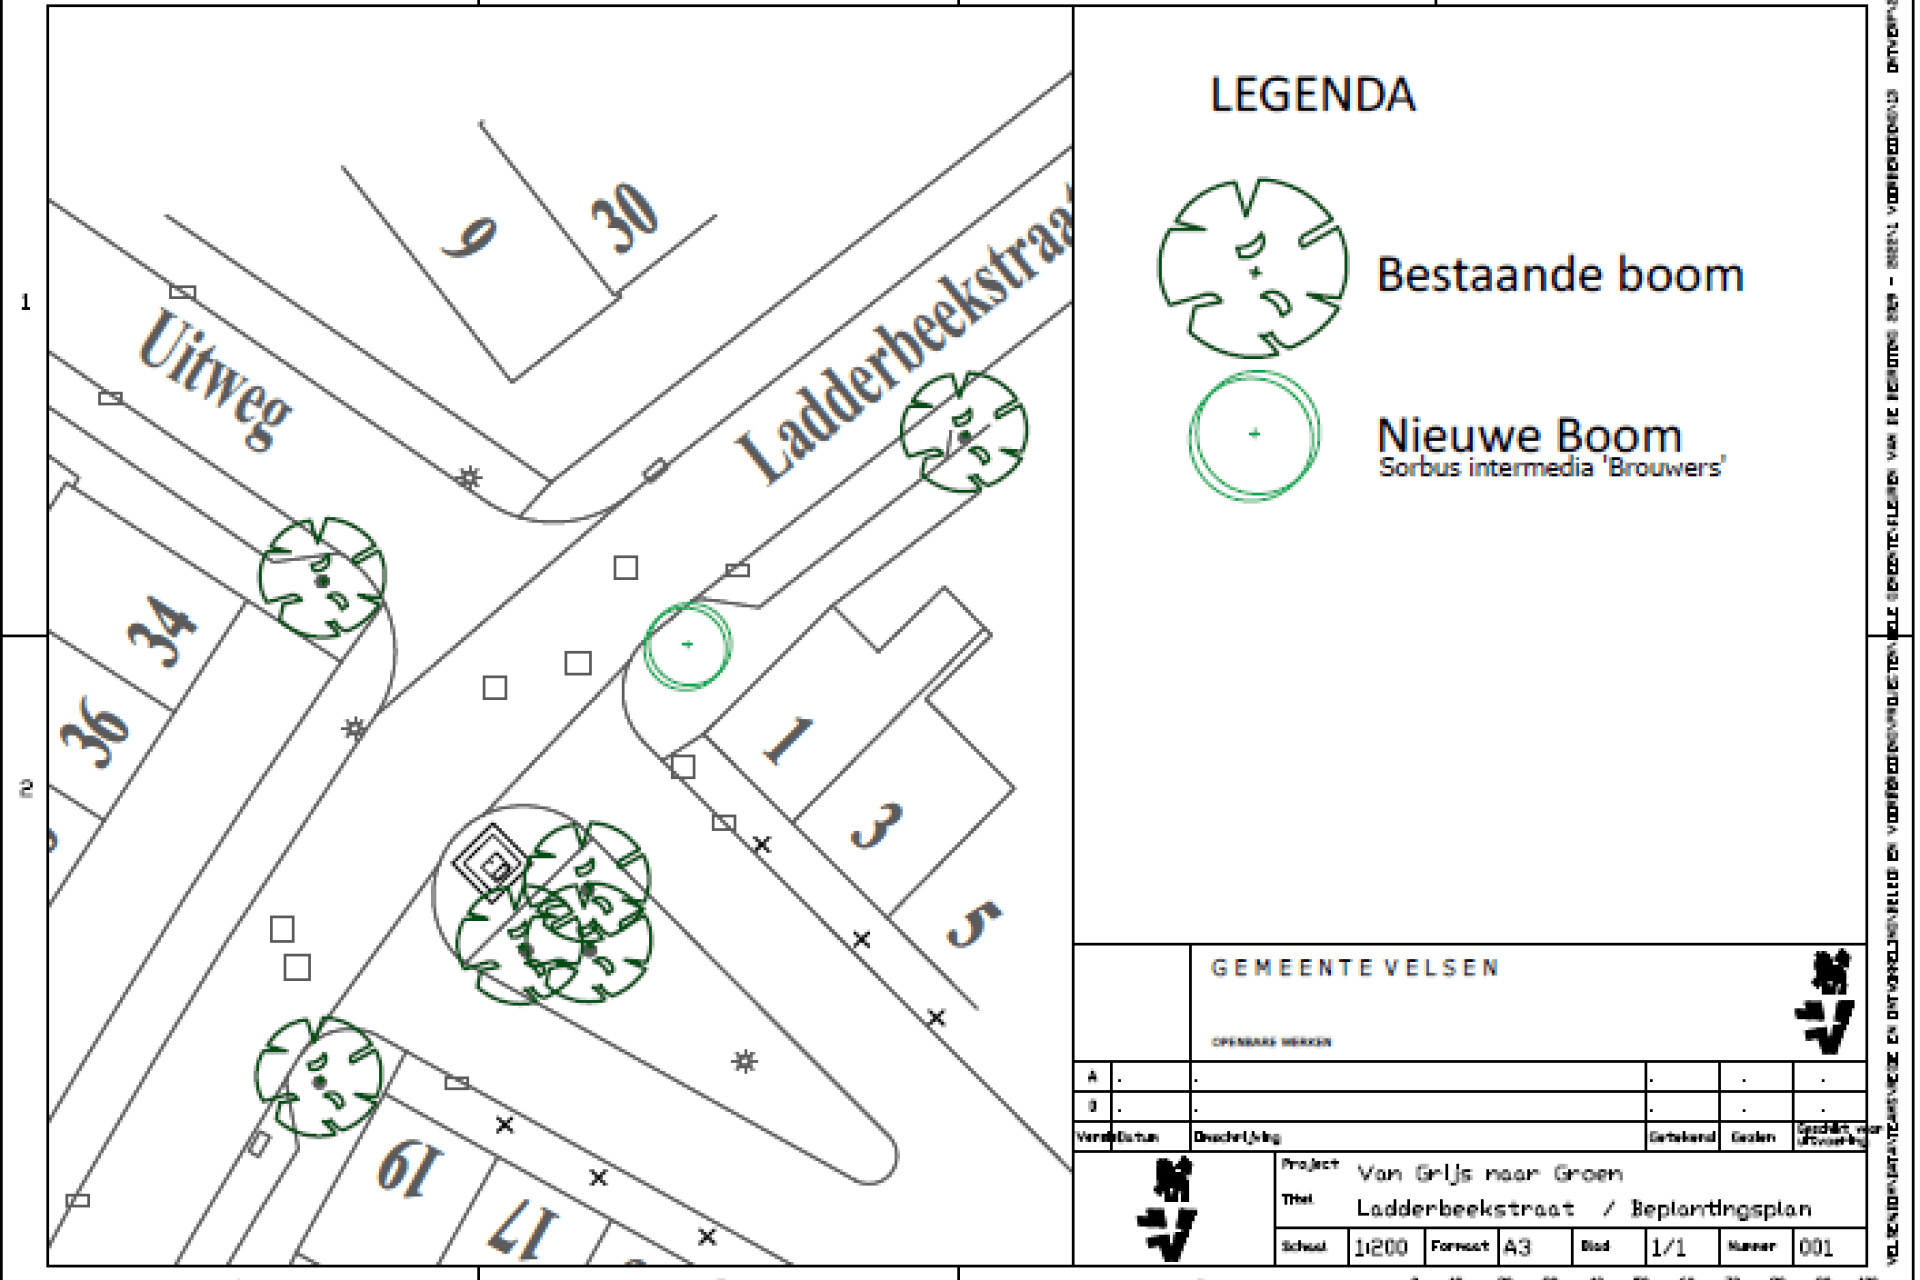  Afbeelding beplantingsplan Ladderbeekstraat